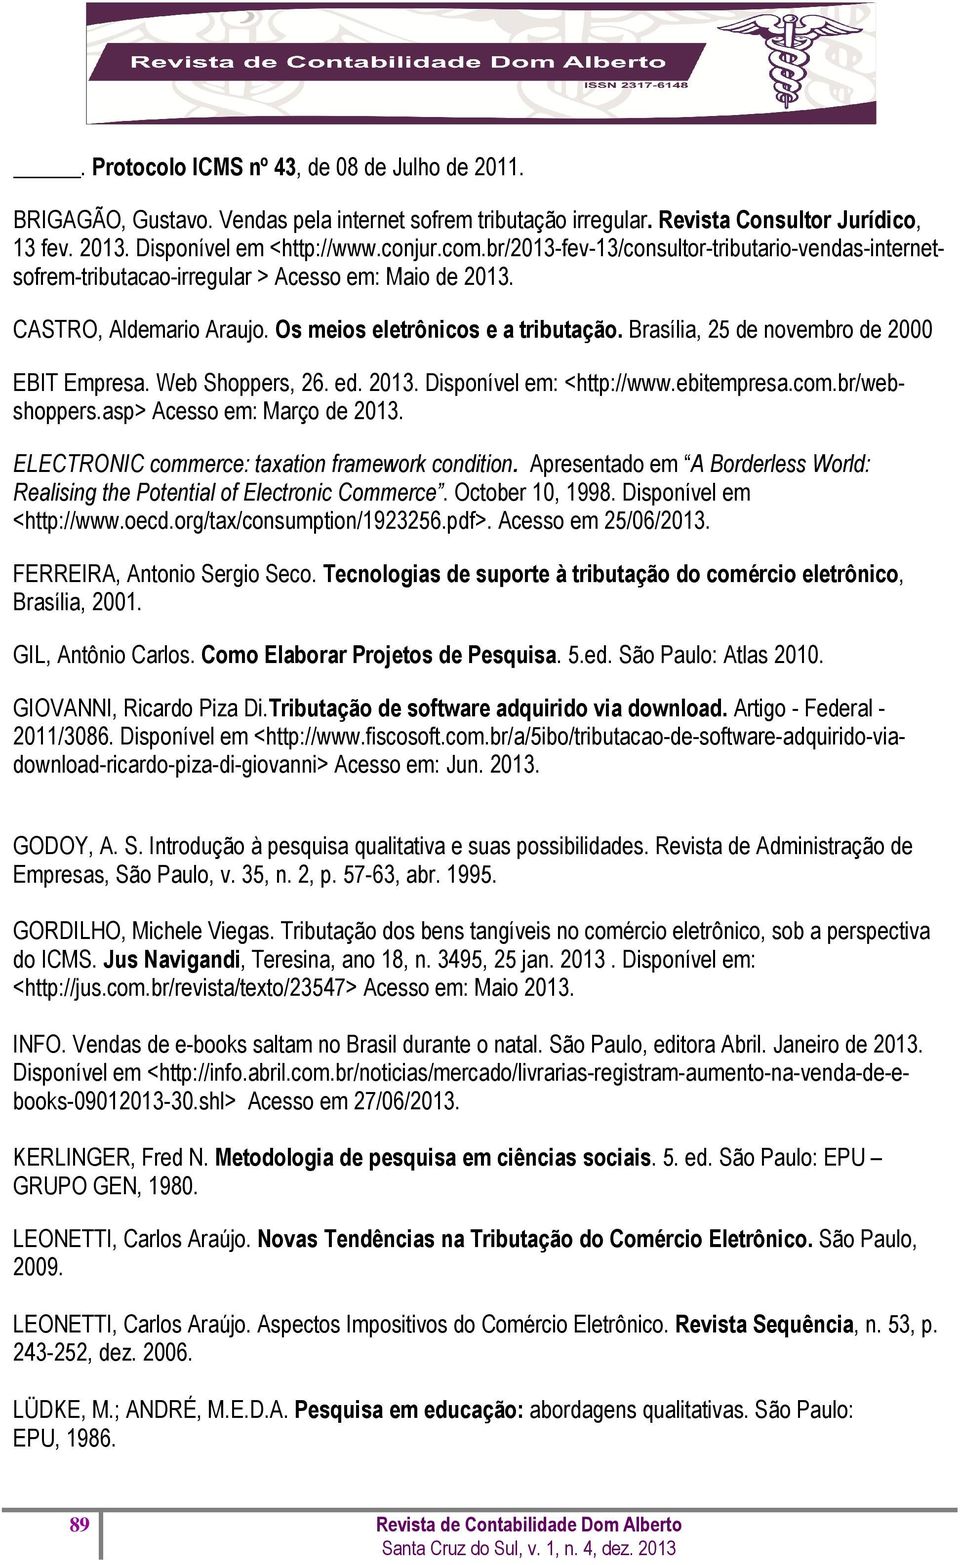 Brasília, 25 de novembro de 2000 EBIT Empresa. Web Shoppers, 26. ed. 2013. Disponível em: <http://www.ebitempresa.com.br/webshoppers.asp> Acesso em: Março de 2013.